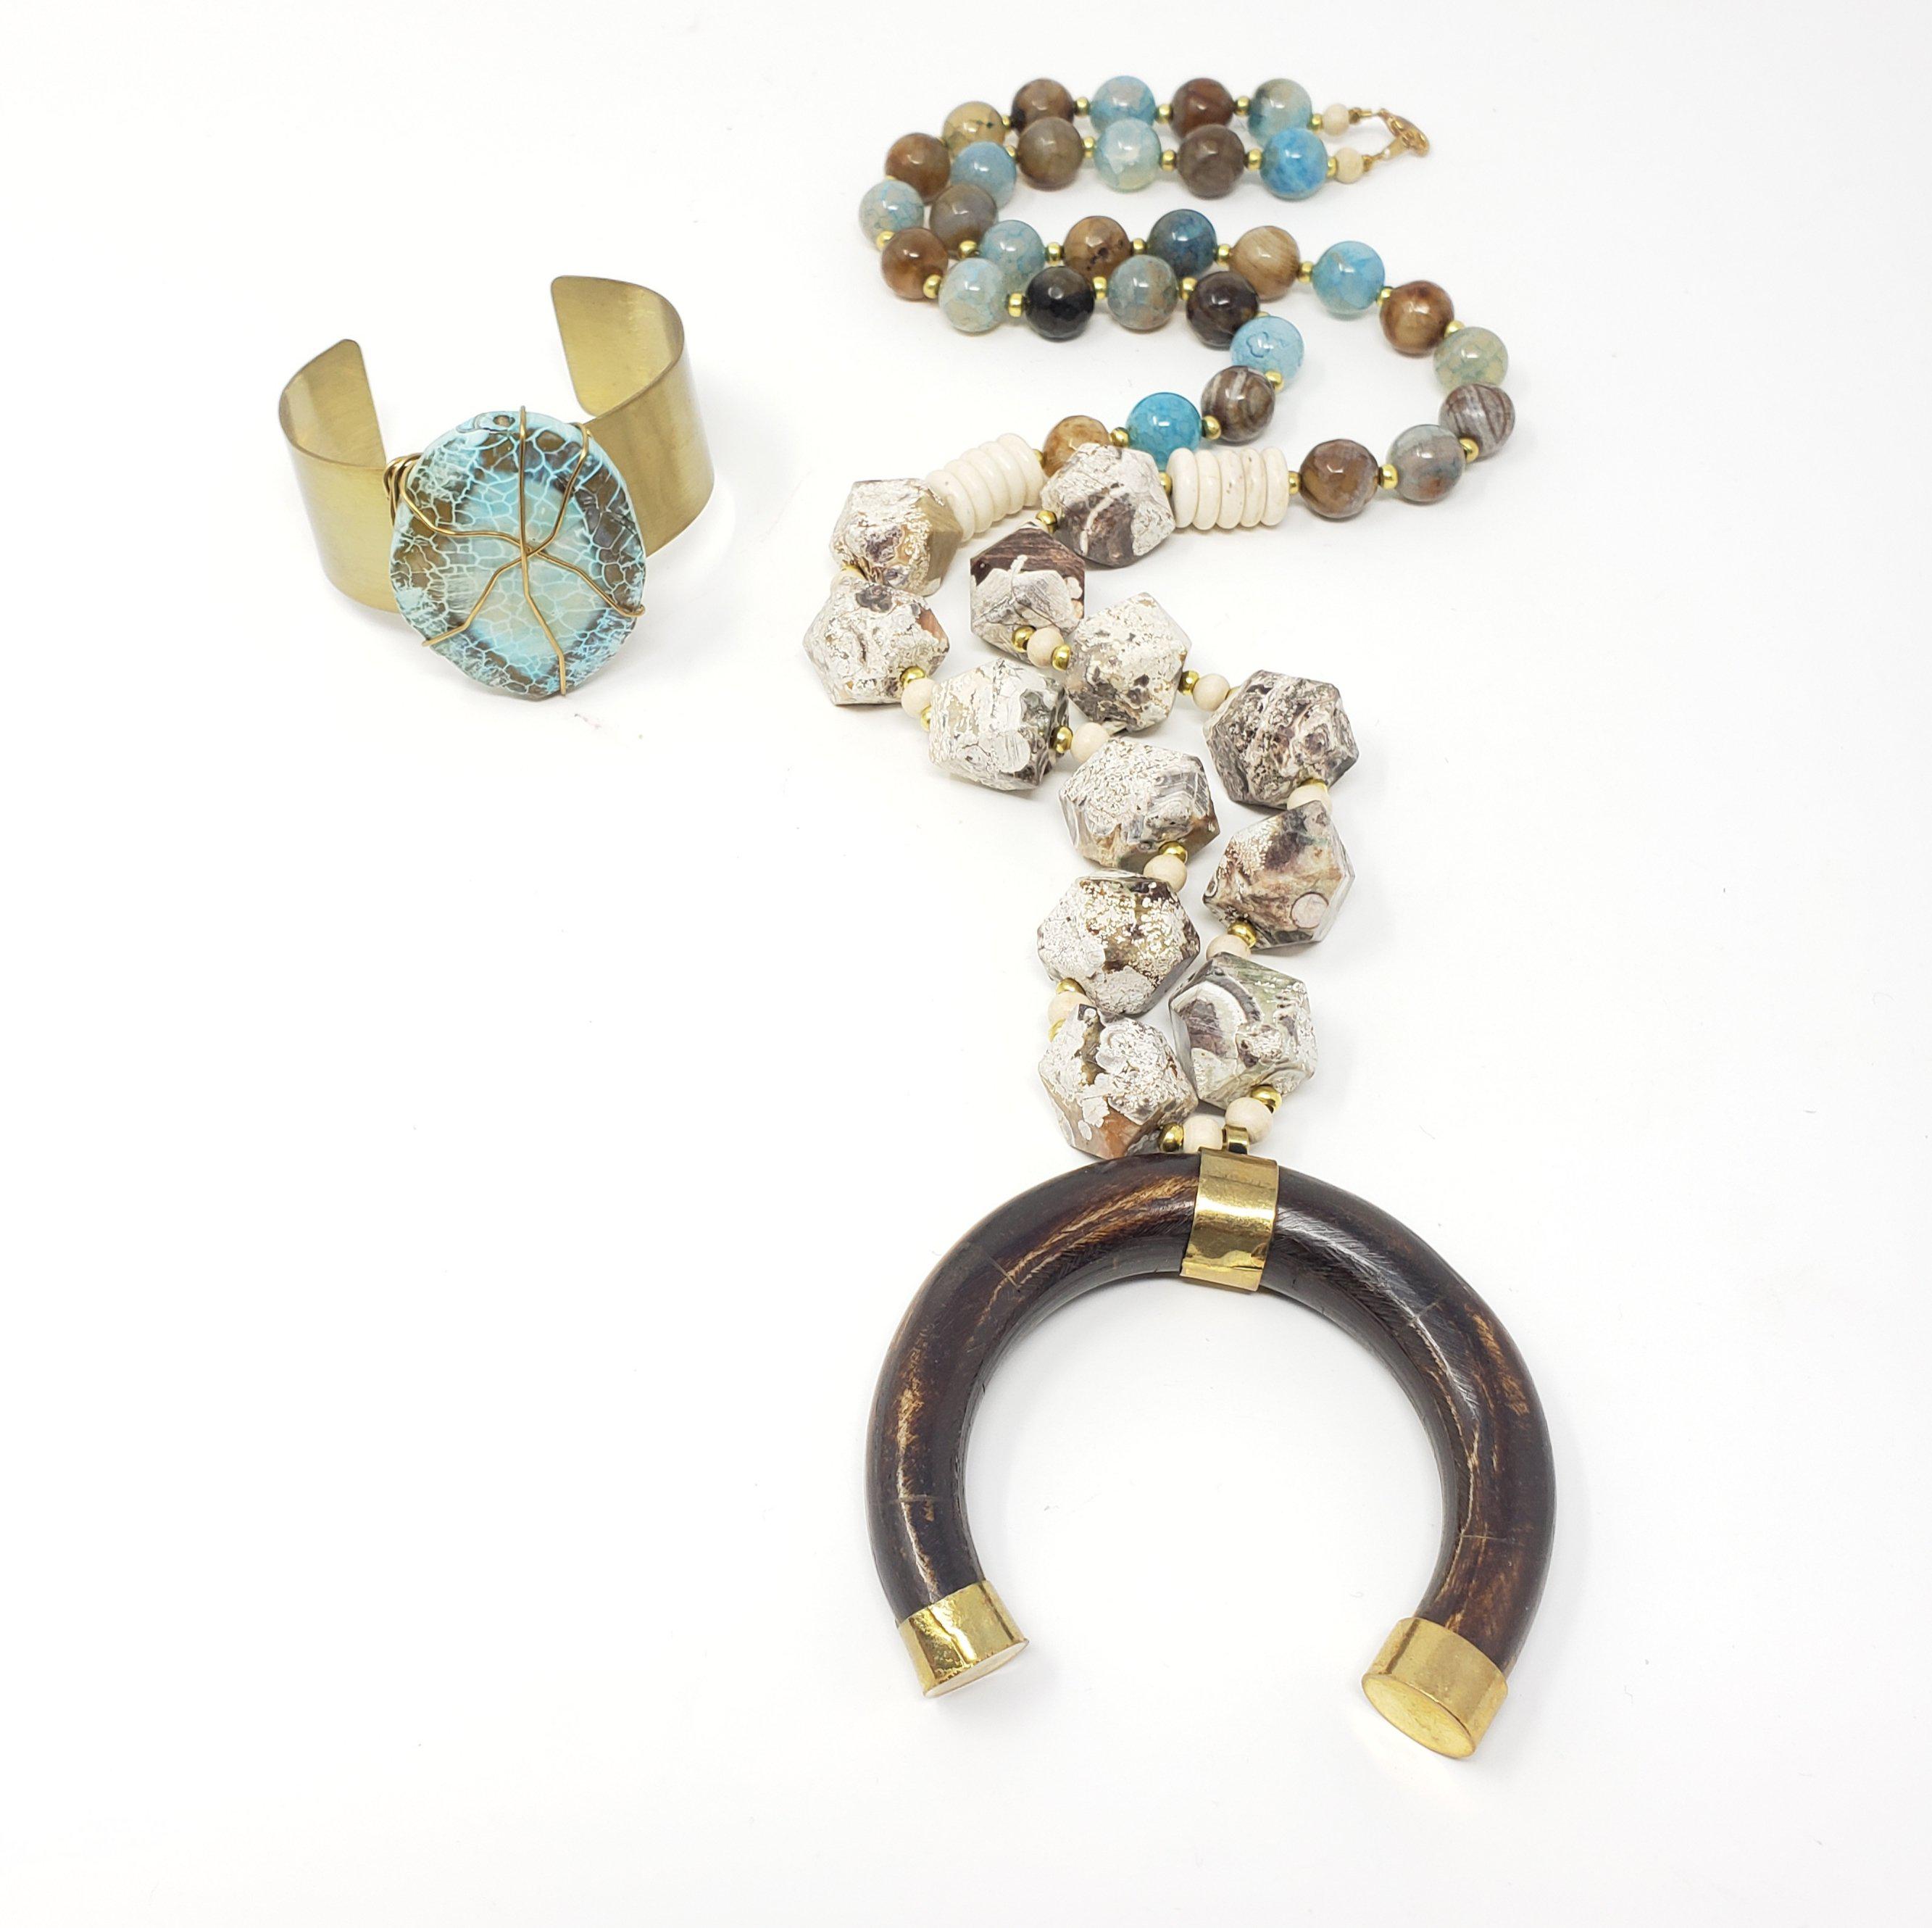 Agate Jasper Bone Horn Necklace and Cuff